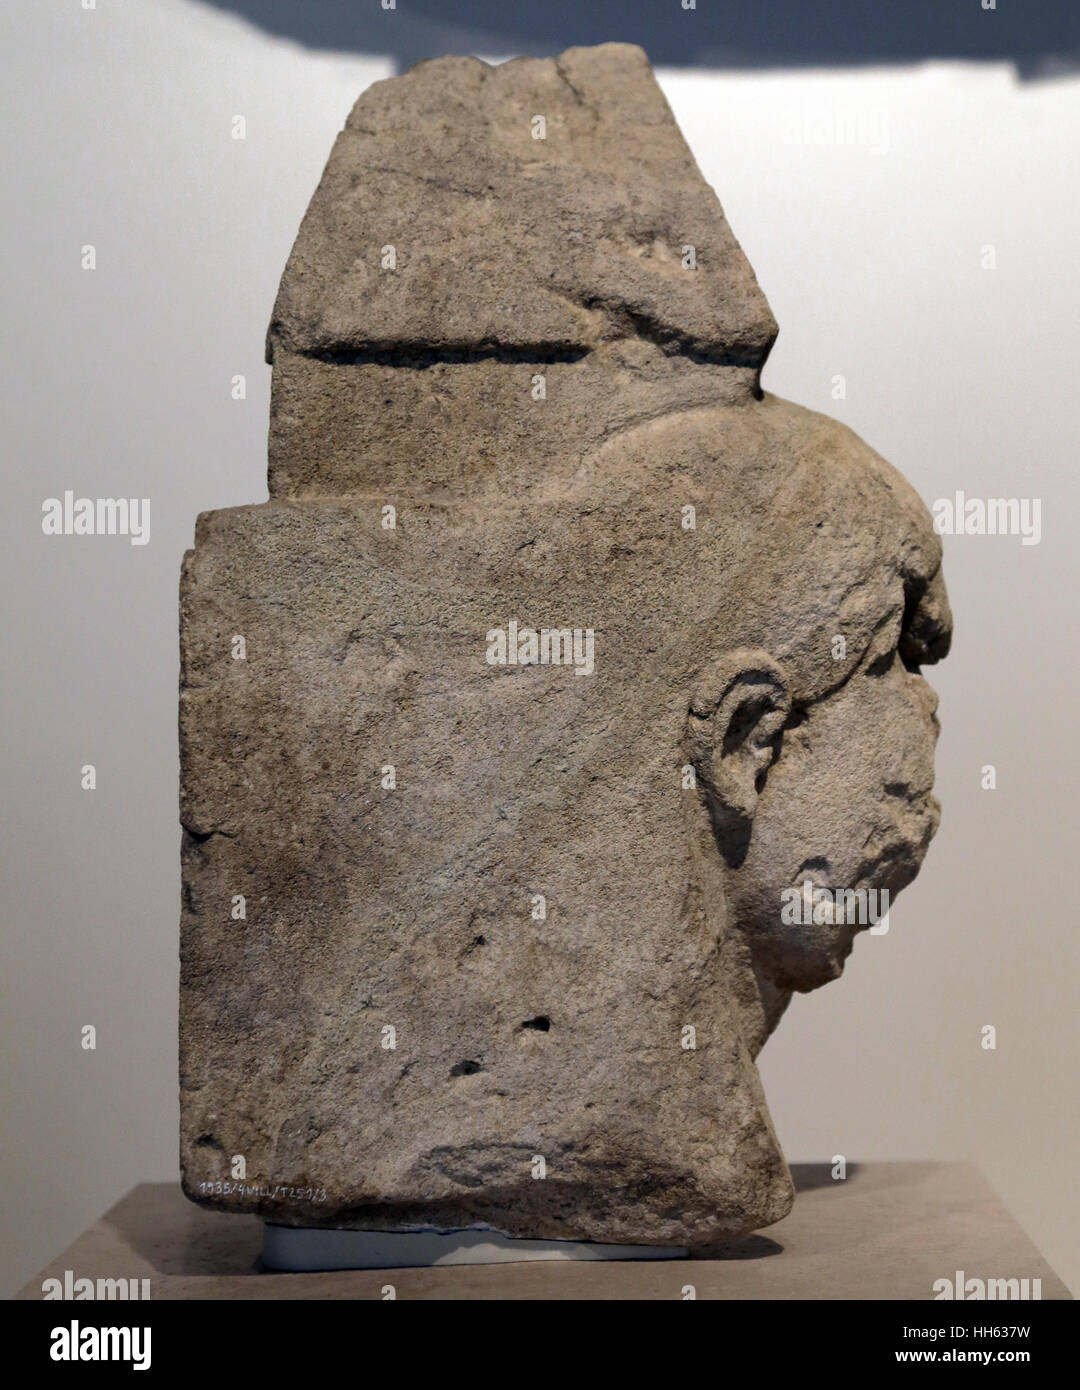 Stela. 6. Jahrhundert vor Christus. Nekropole von Villaricos, Almanzora, Almeria, Spanien. Dekoriert mit Abbildung eines ägyptischen Kopfschmuck. Spanien Stockfoto